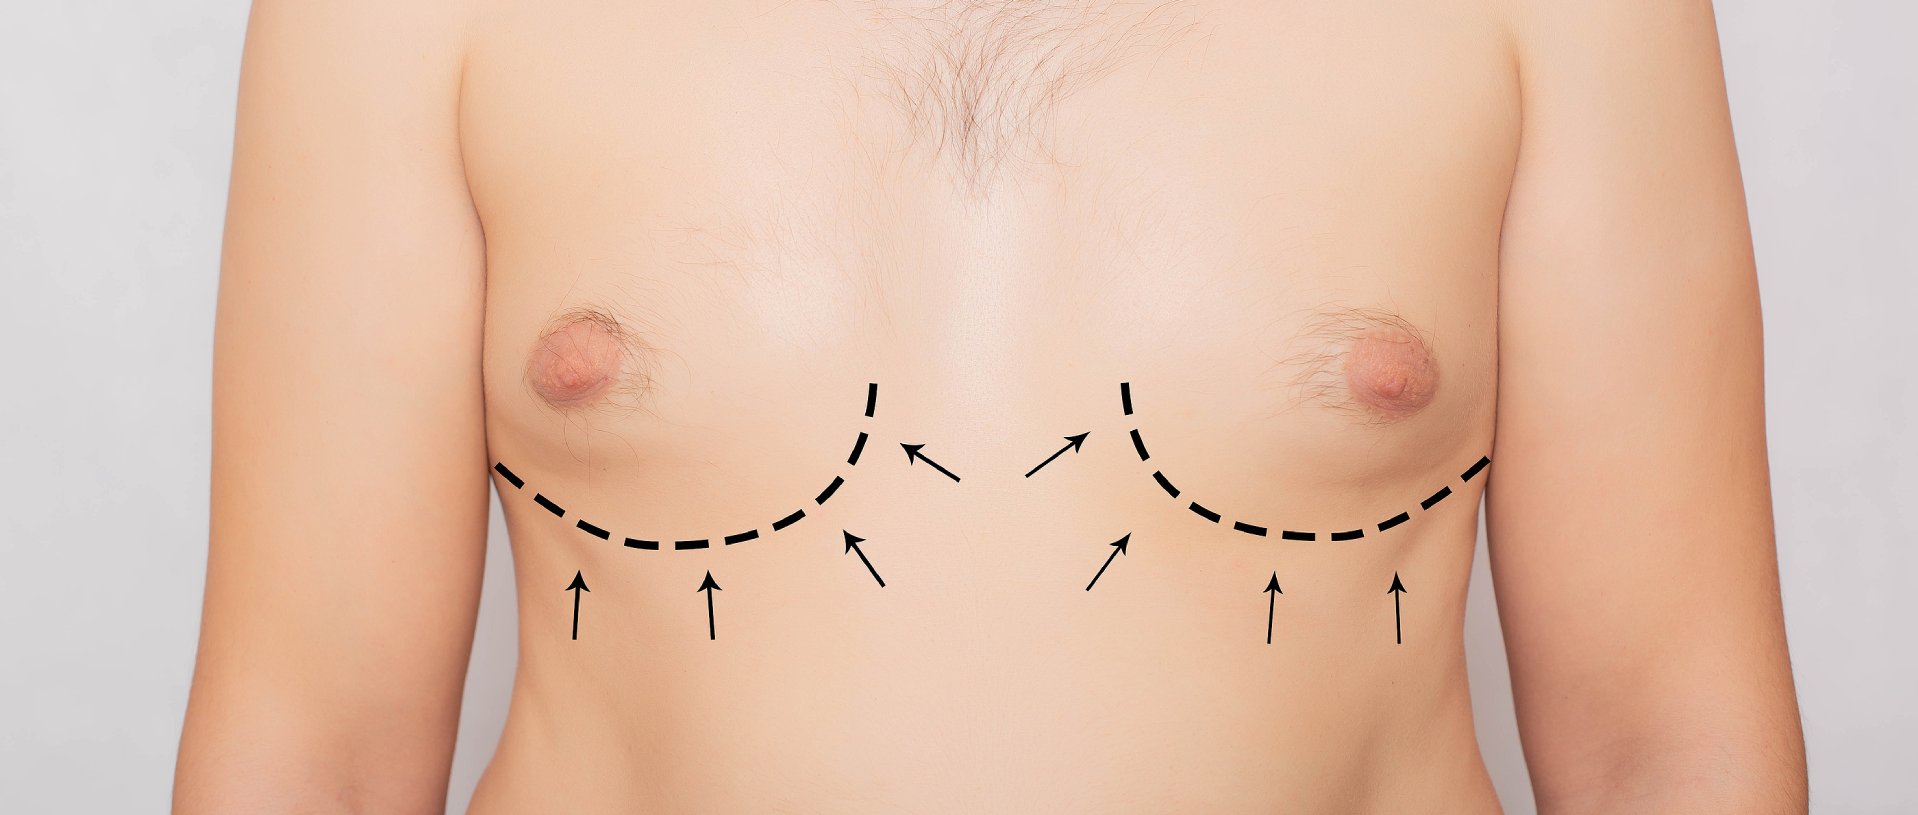 male breast plastic, gynecomastia